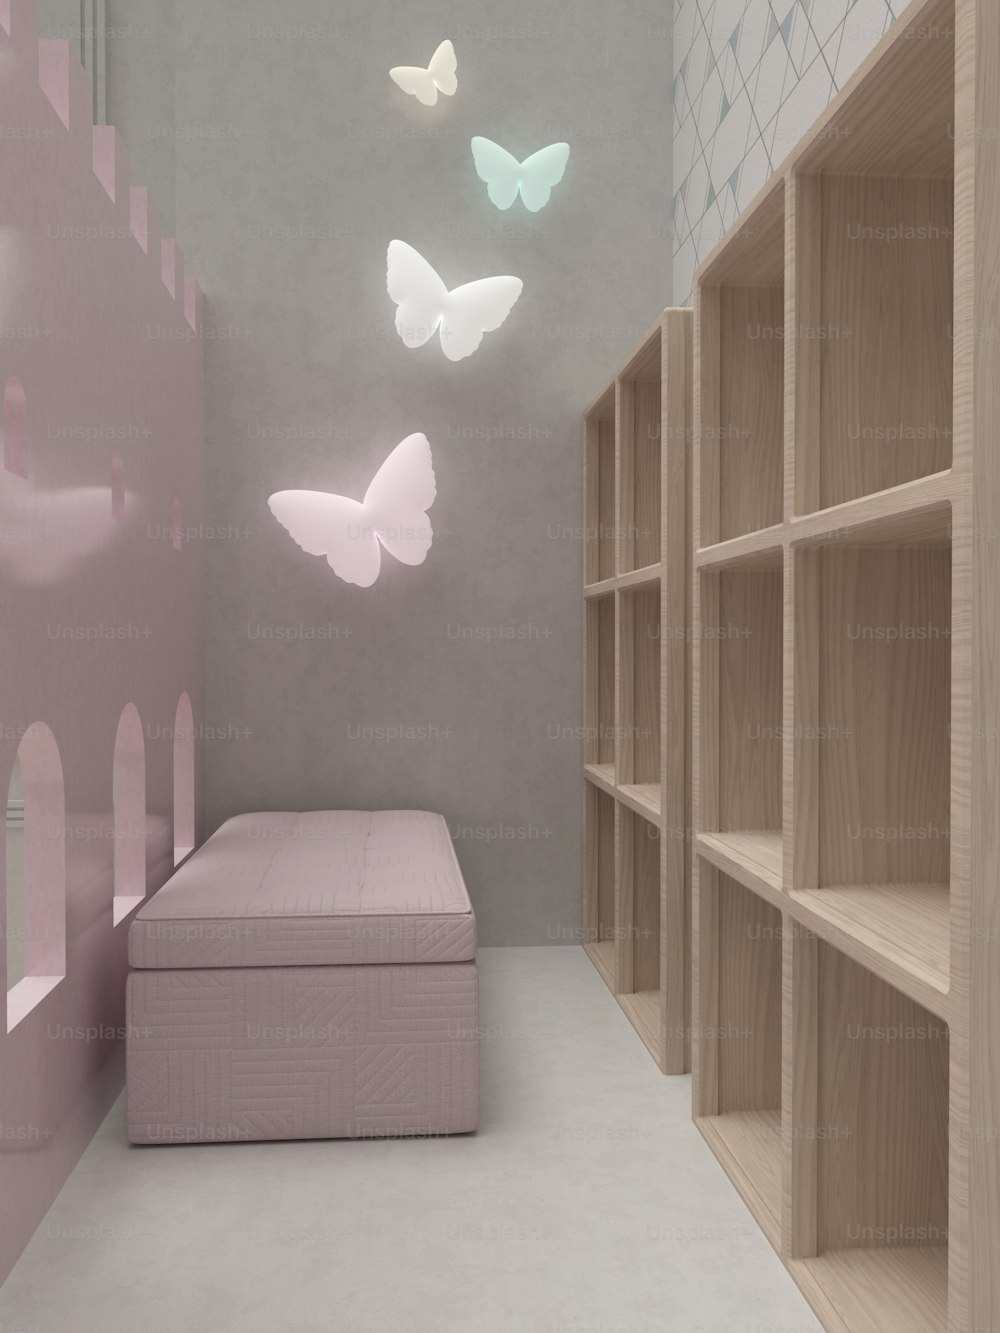 벽에 침대, 선반, 나비가 있는 방